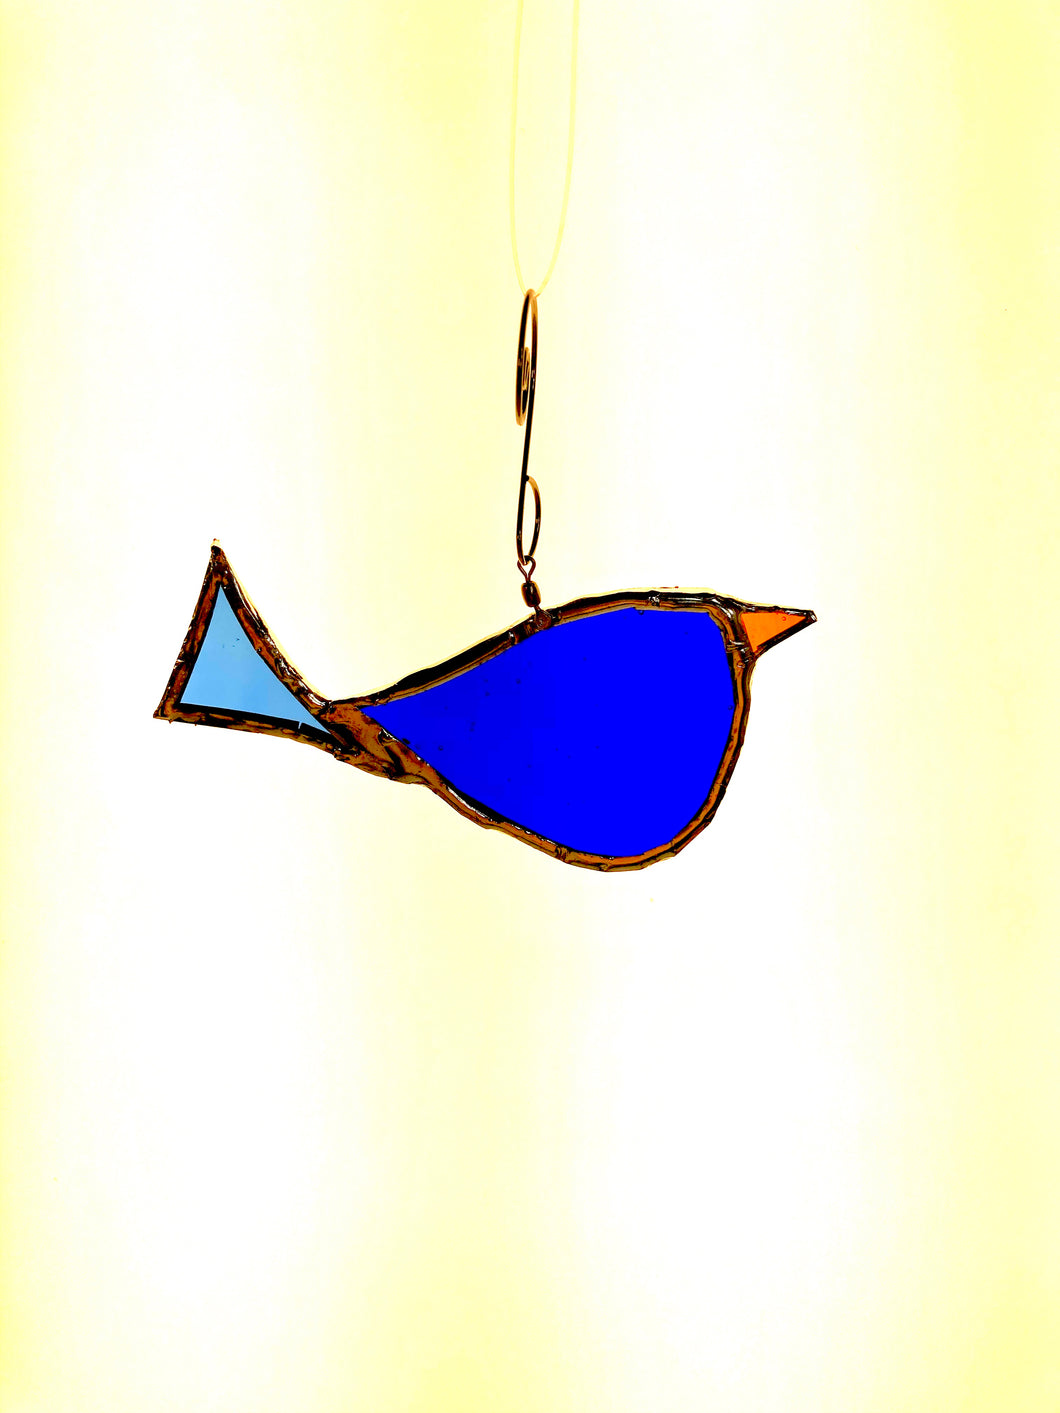 Cobalt Blue Bird